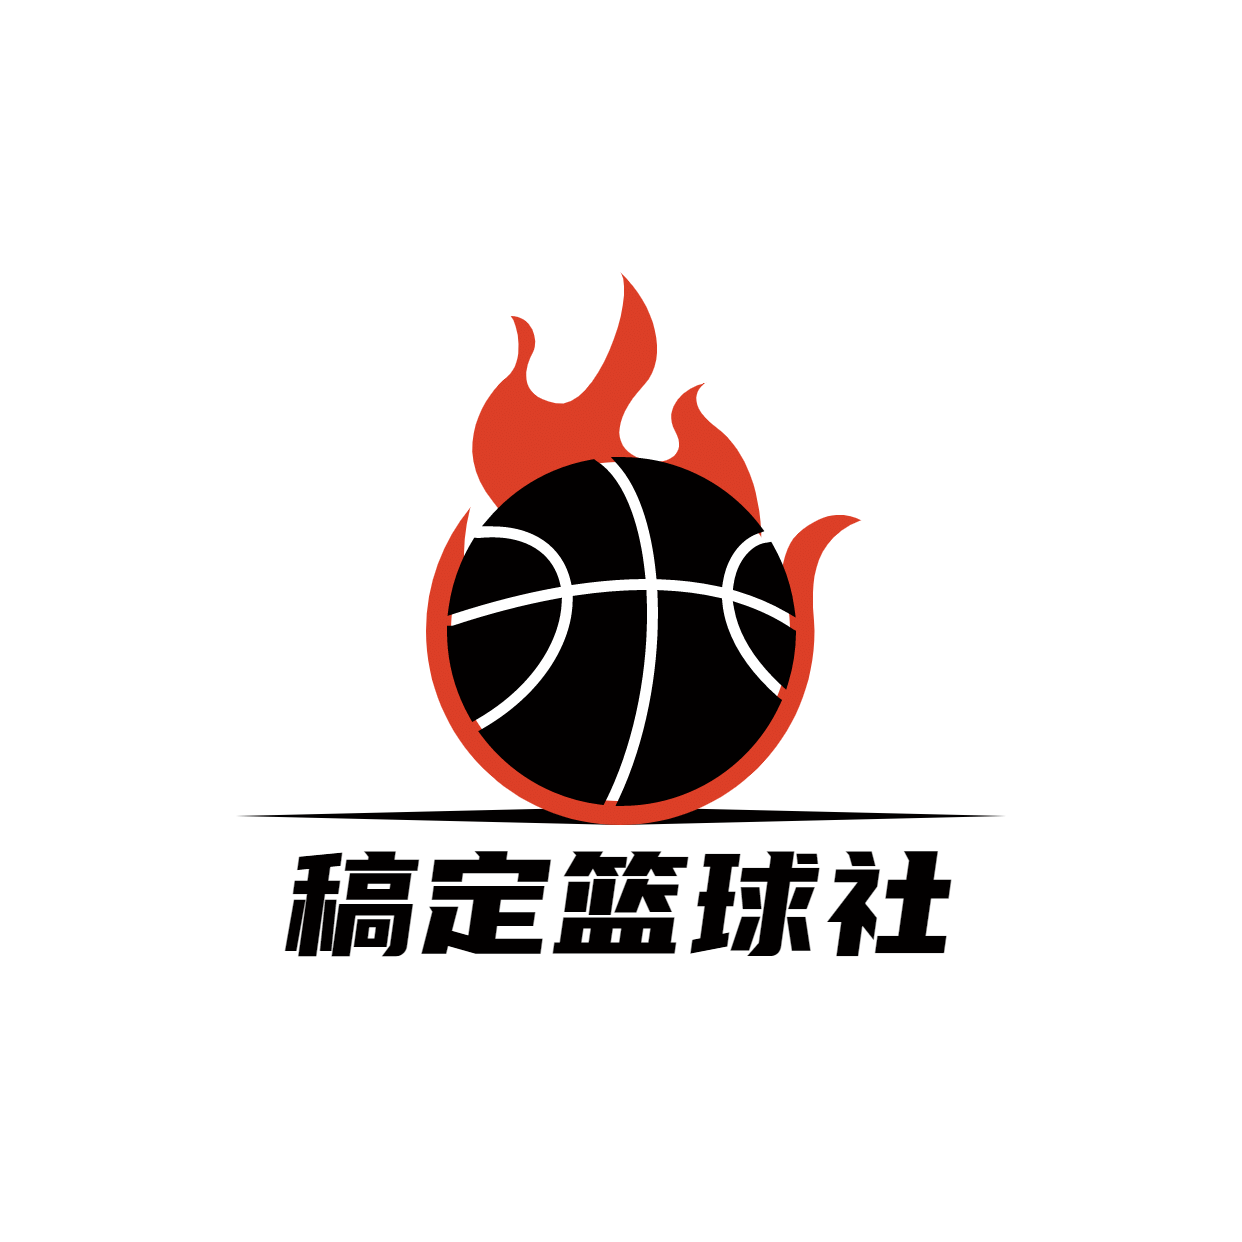 教育培训篮球社简约清新logo